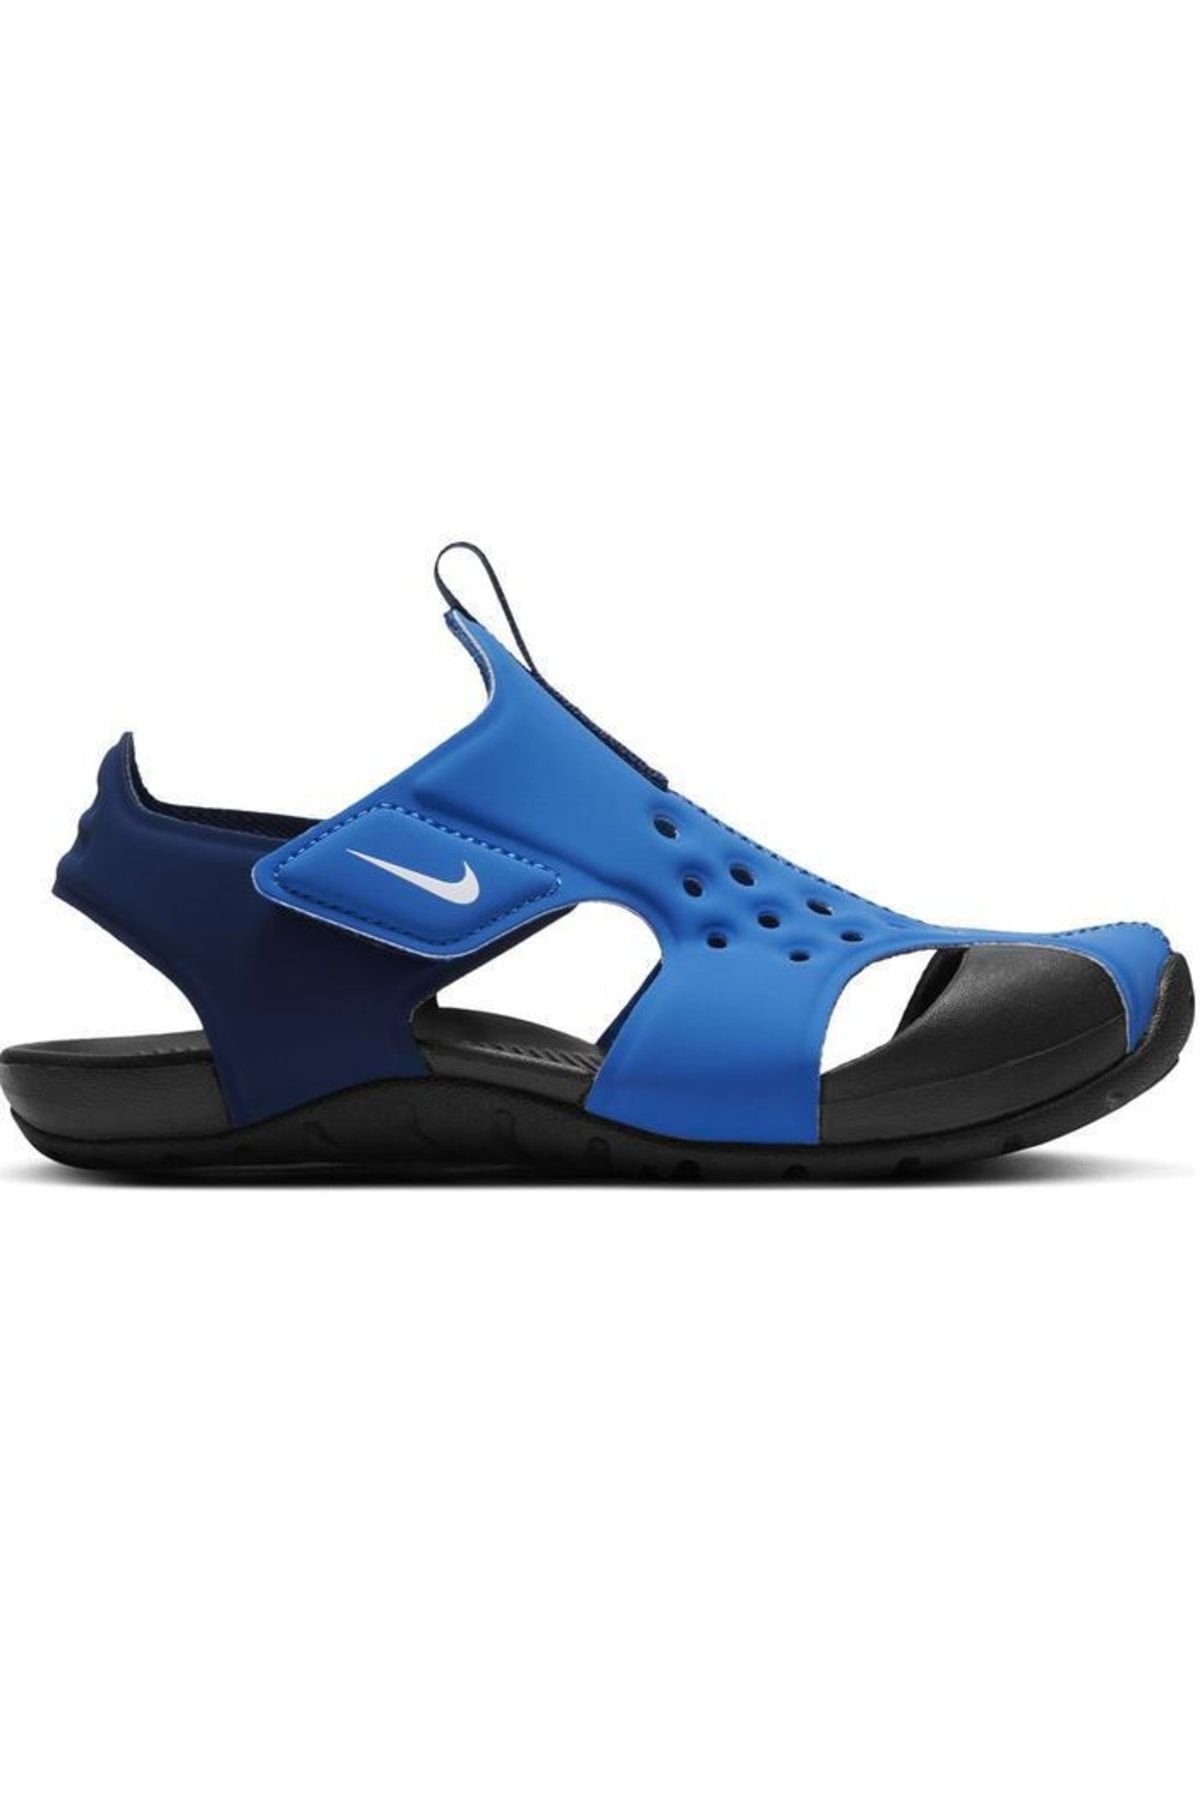 Nike Sunray Protect 2 (ps) Çocuk Mavi Günlük Sandalet 943826-403